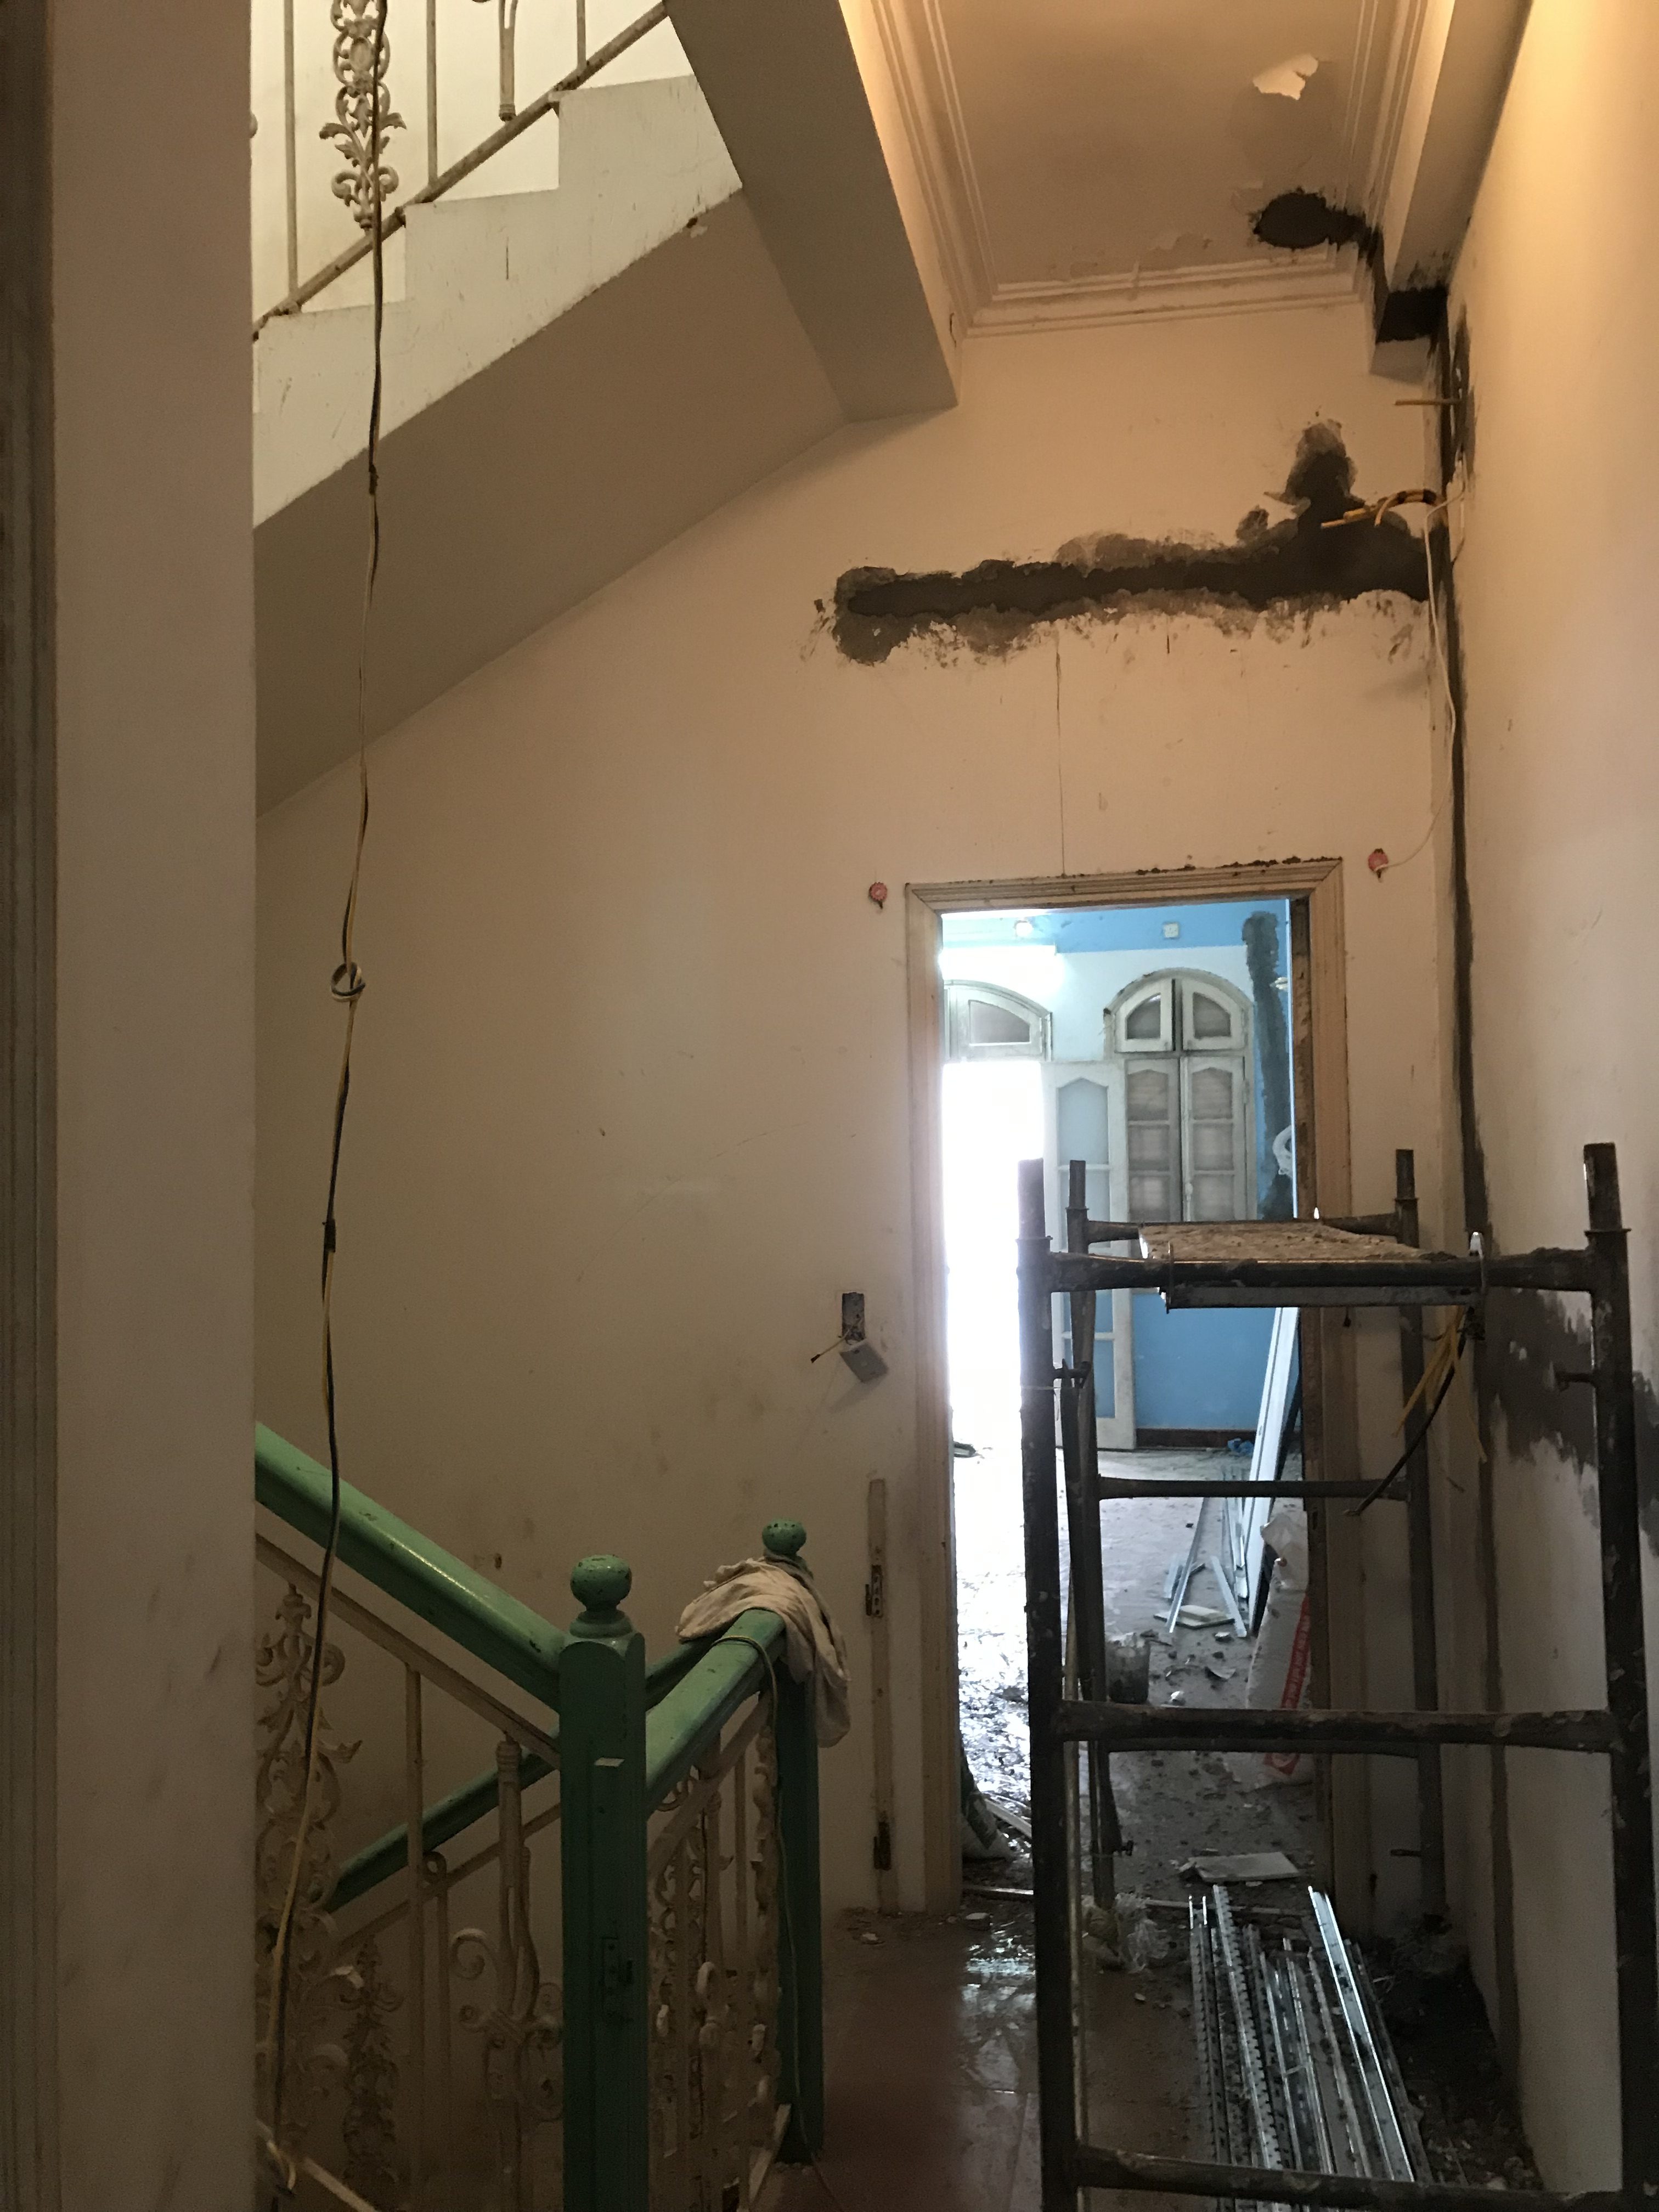 Quá trình Thi công sửa nhà 6 tầng trọn gói giá rẻ tại Hà Nội